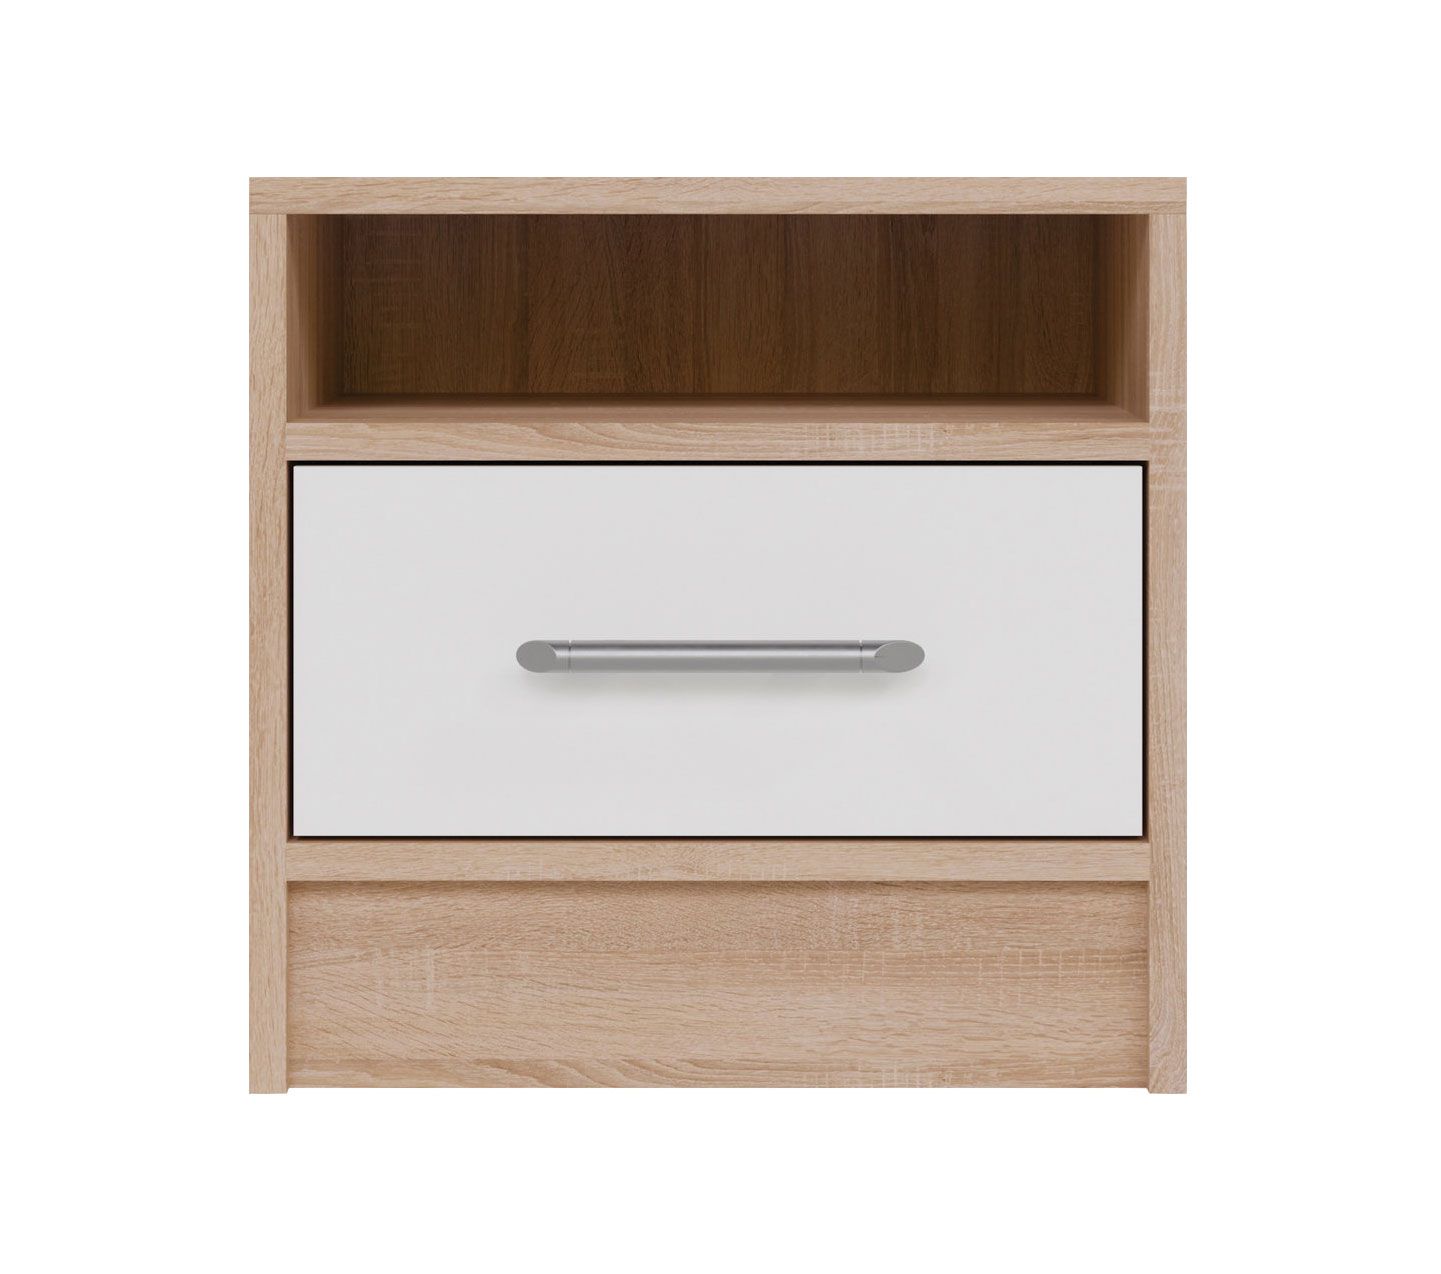 Hannut 17 bedside cabinet, color: white / oak - Dimensions: 40 x 40 x 35 cm (H x W x D)